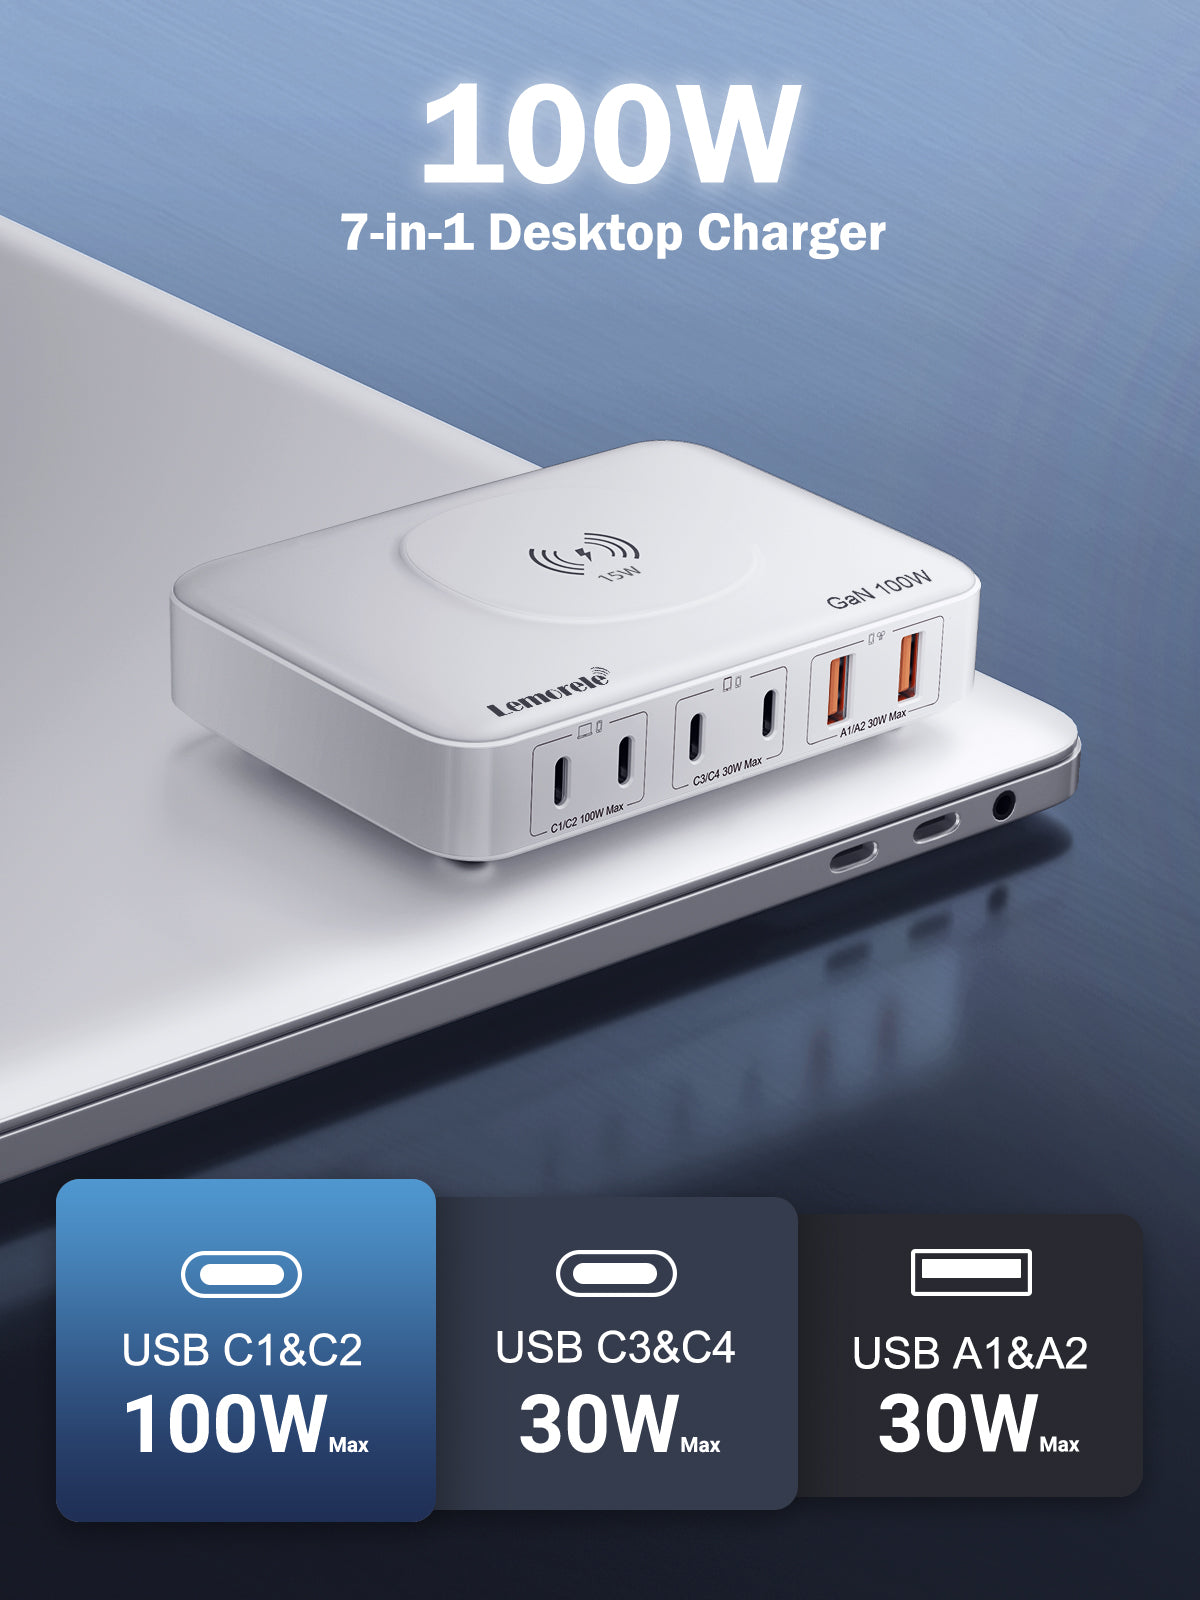 Lemorele Desktop multi-port charging 100W white